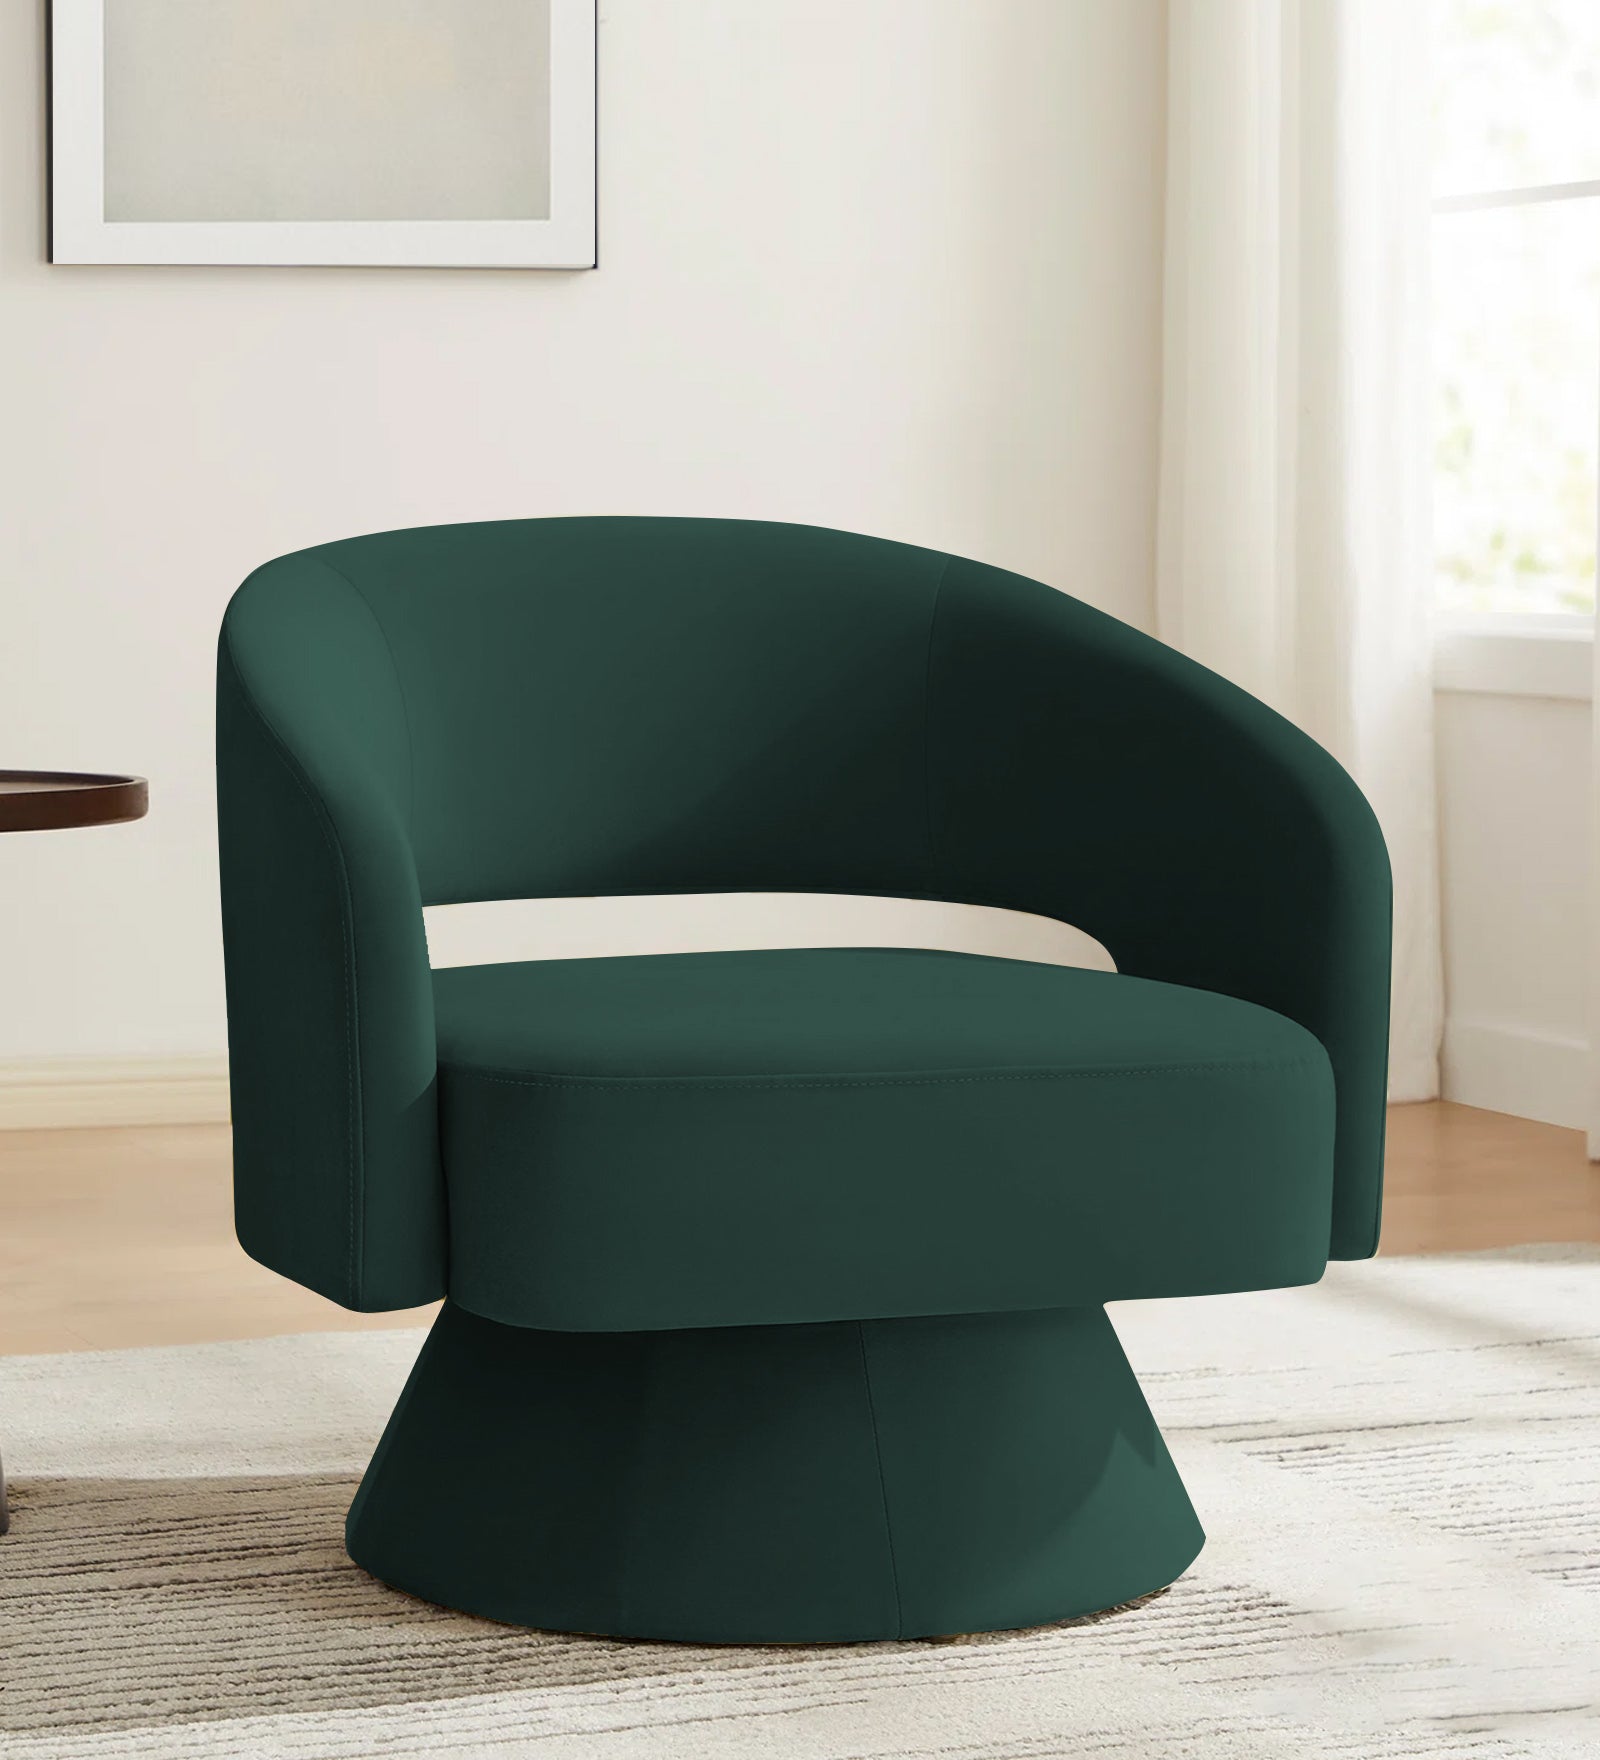 Pendra Velvet Swivel Chair in Forest Green Colour